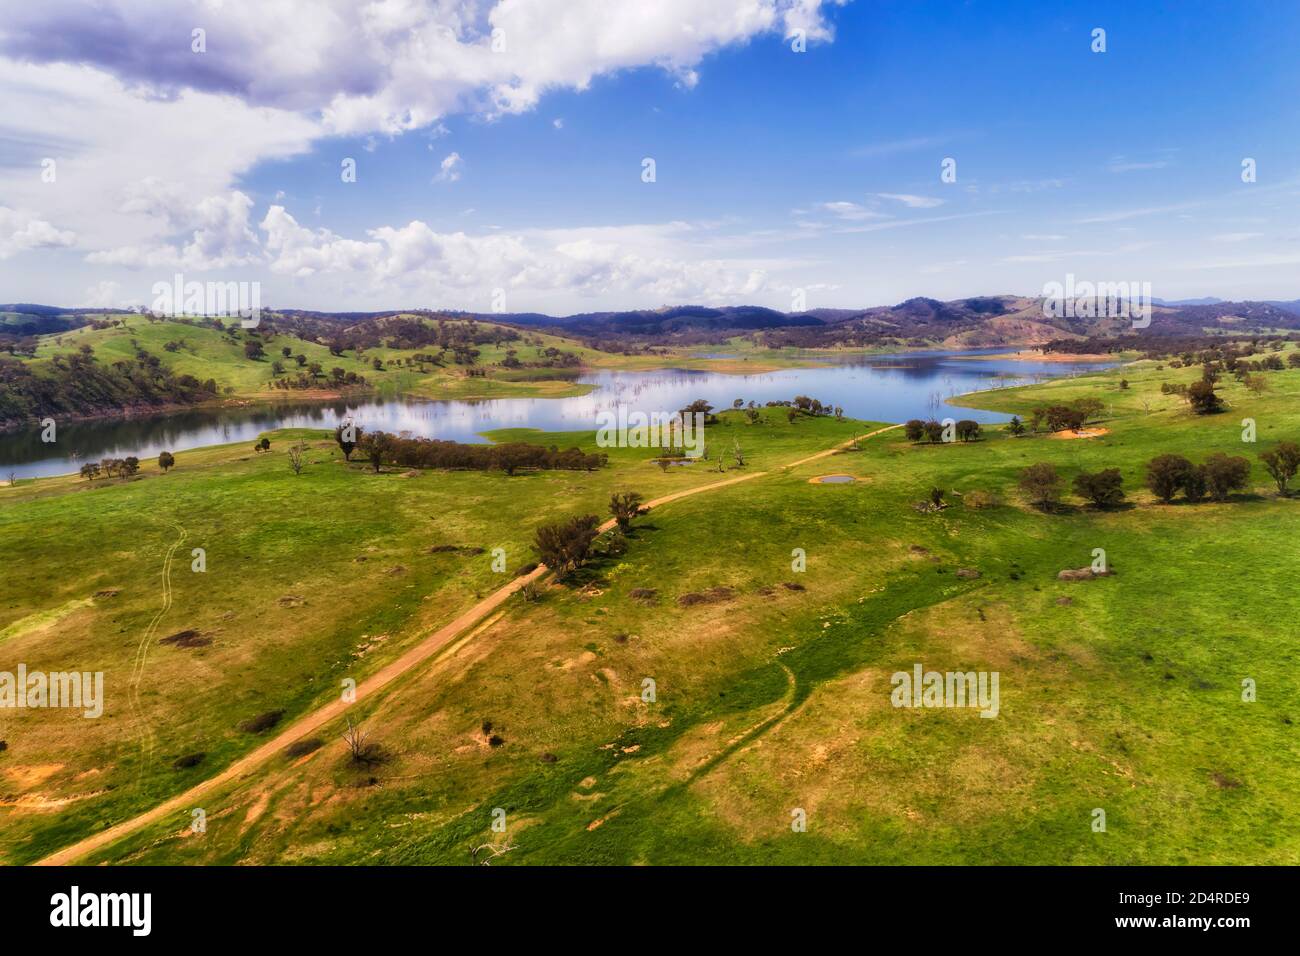 Landschaftlich reizvolle Luftaufnahme des Lake Windamere im australischen Zentralwest NSW an einem sonnigen Sommertag. Stockfoto